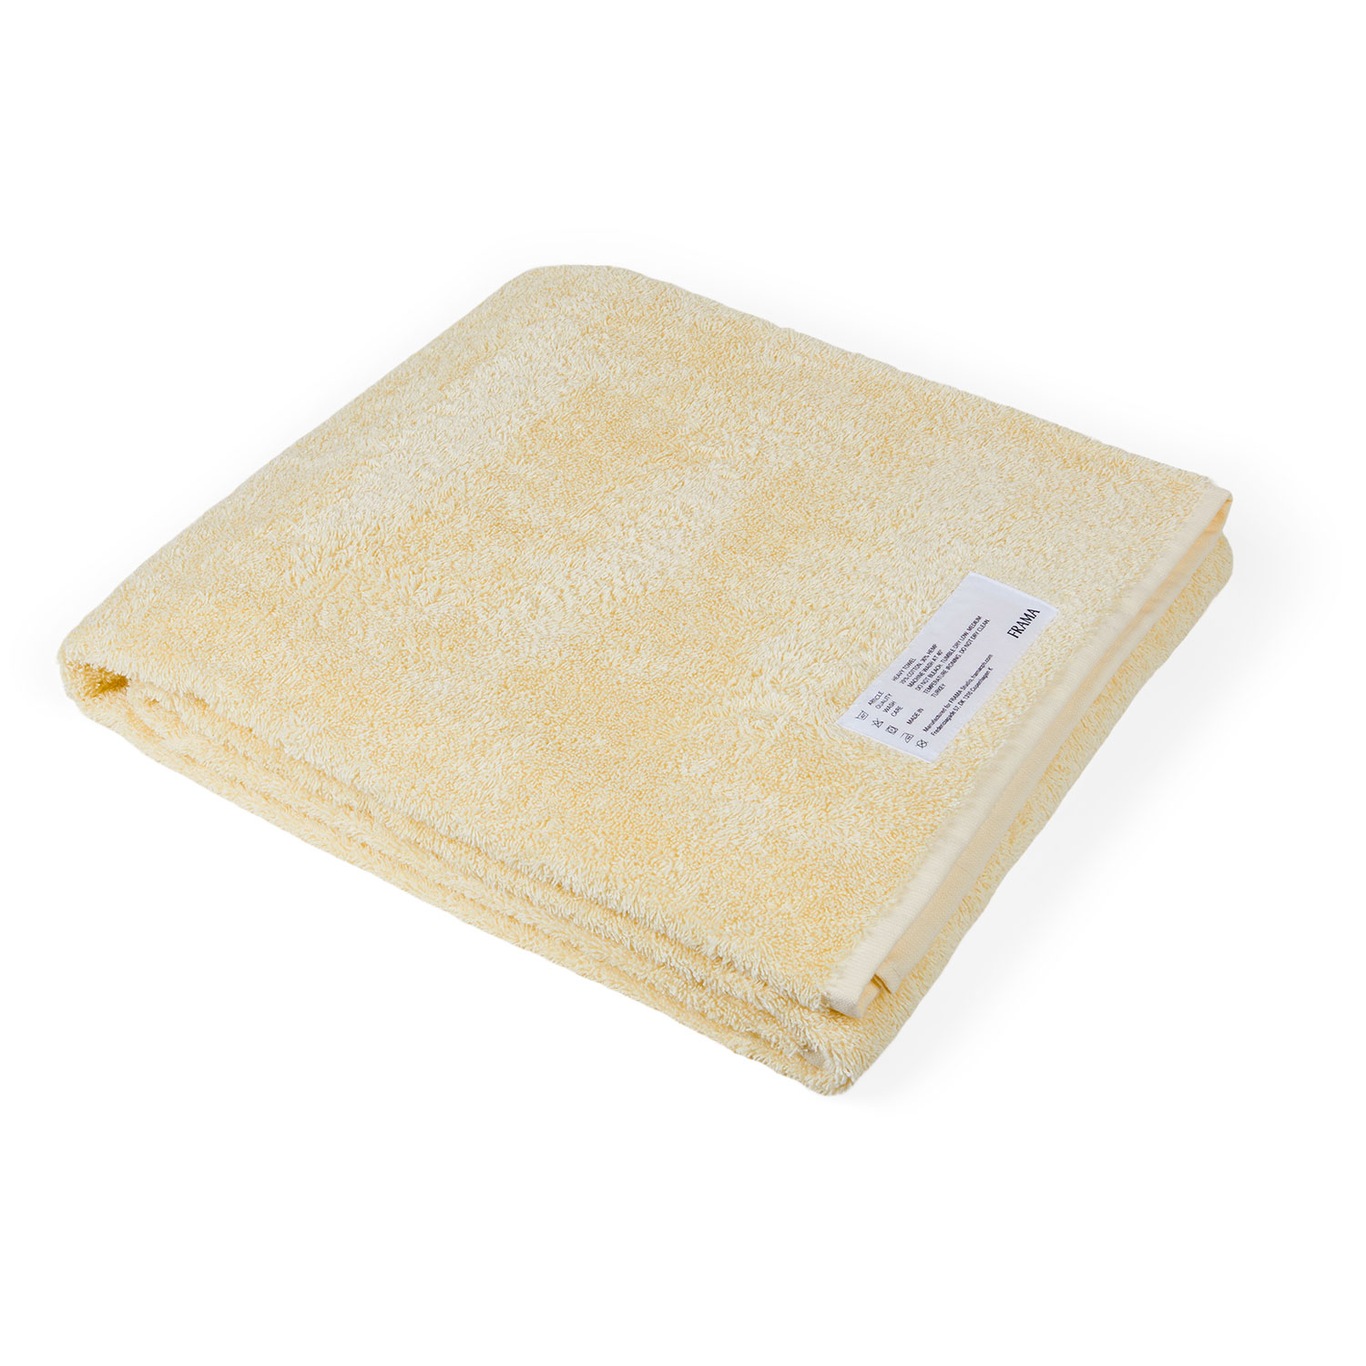 Heavy Towel Kylpylakana 100x150 cm, Pale Yellow